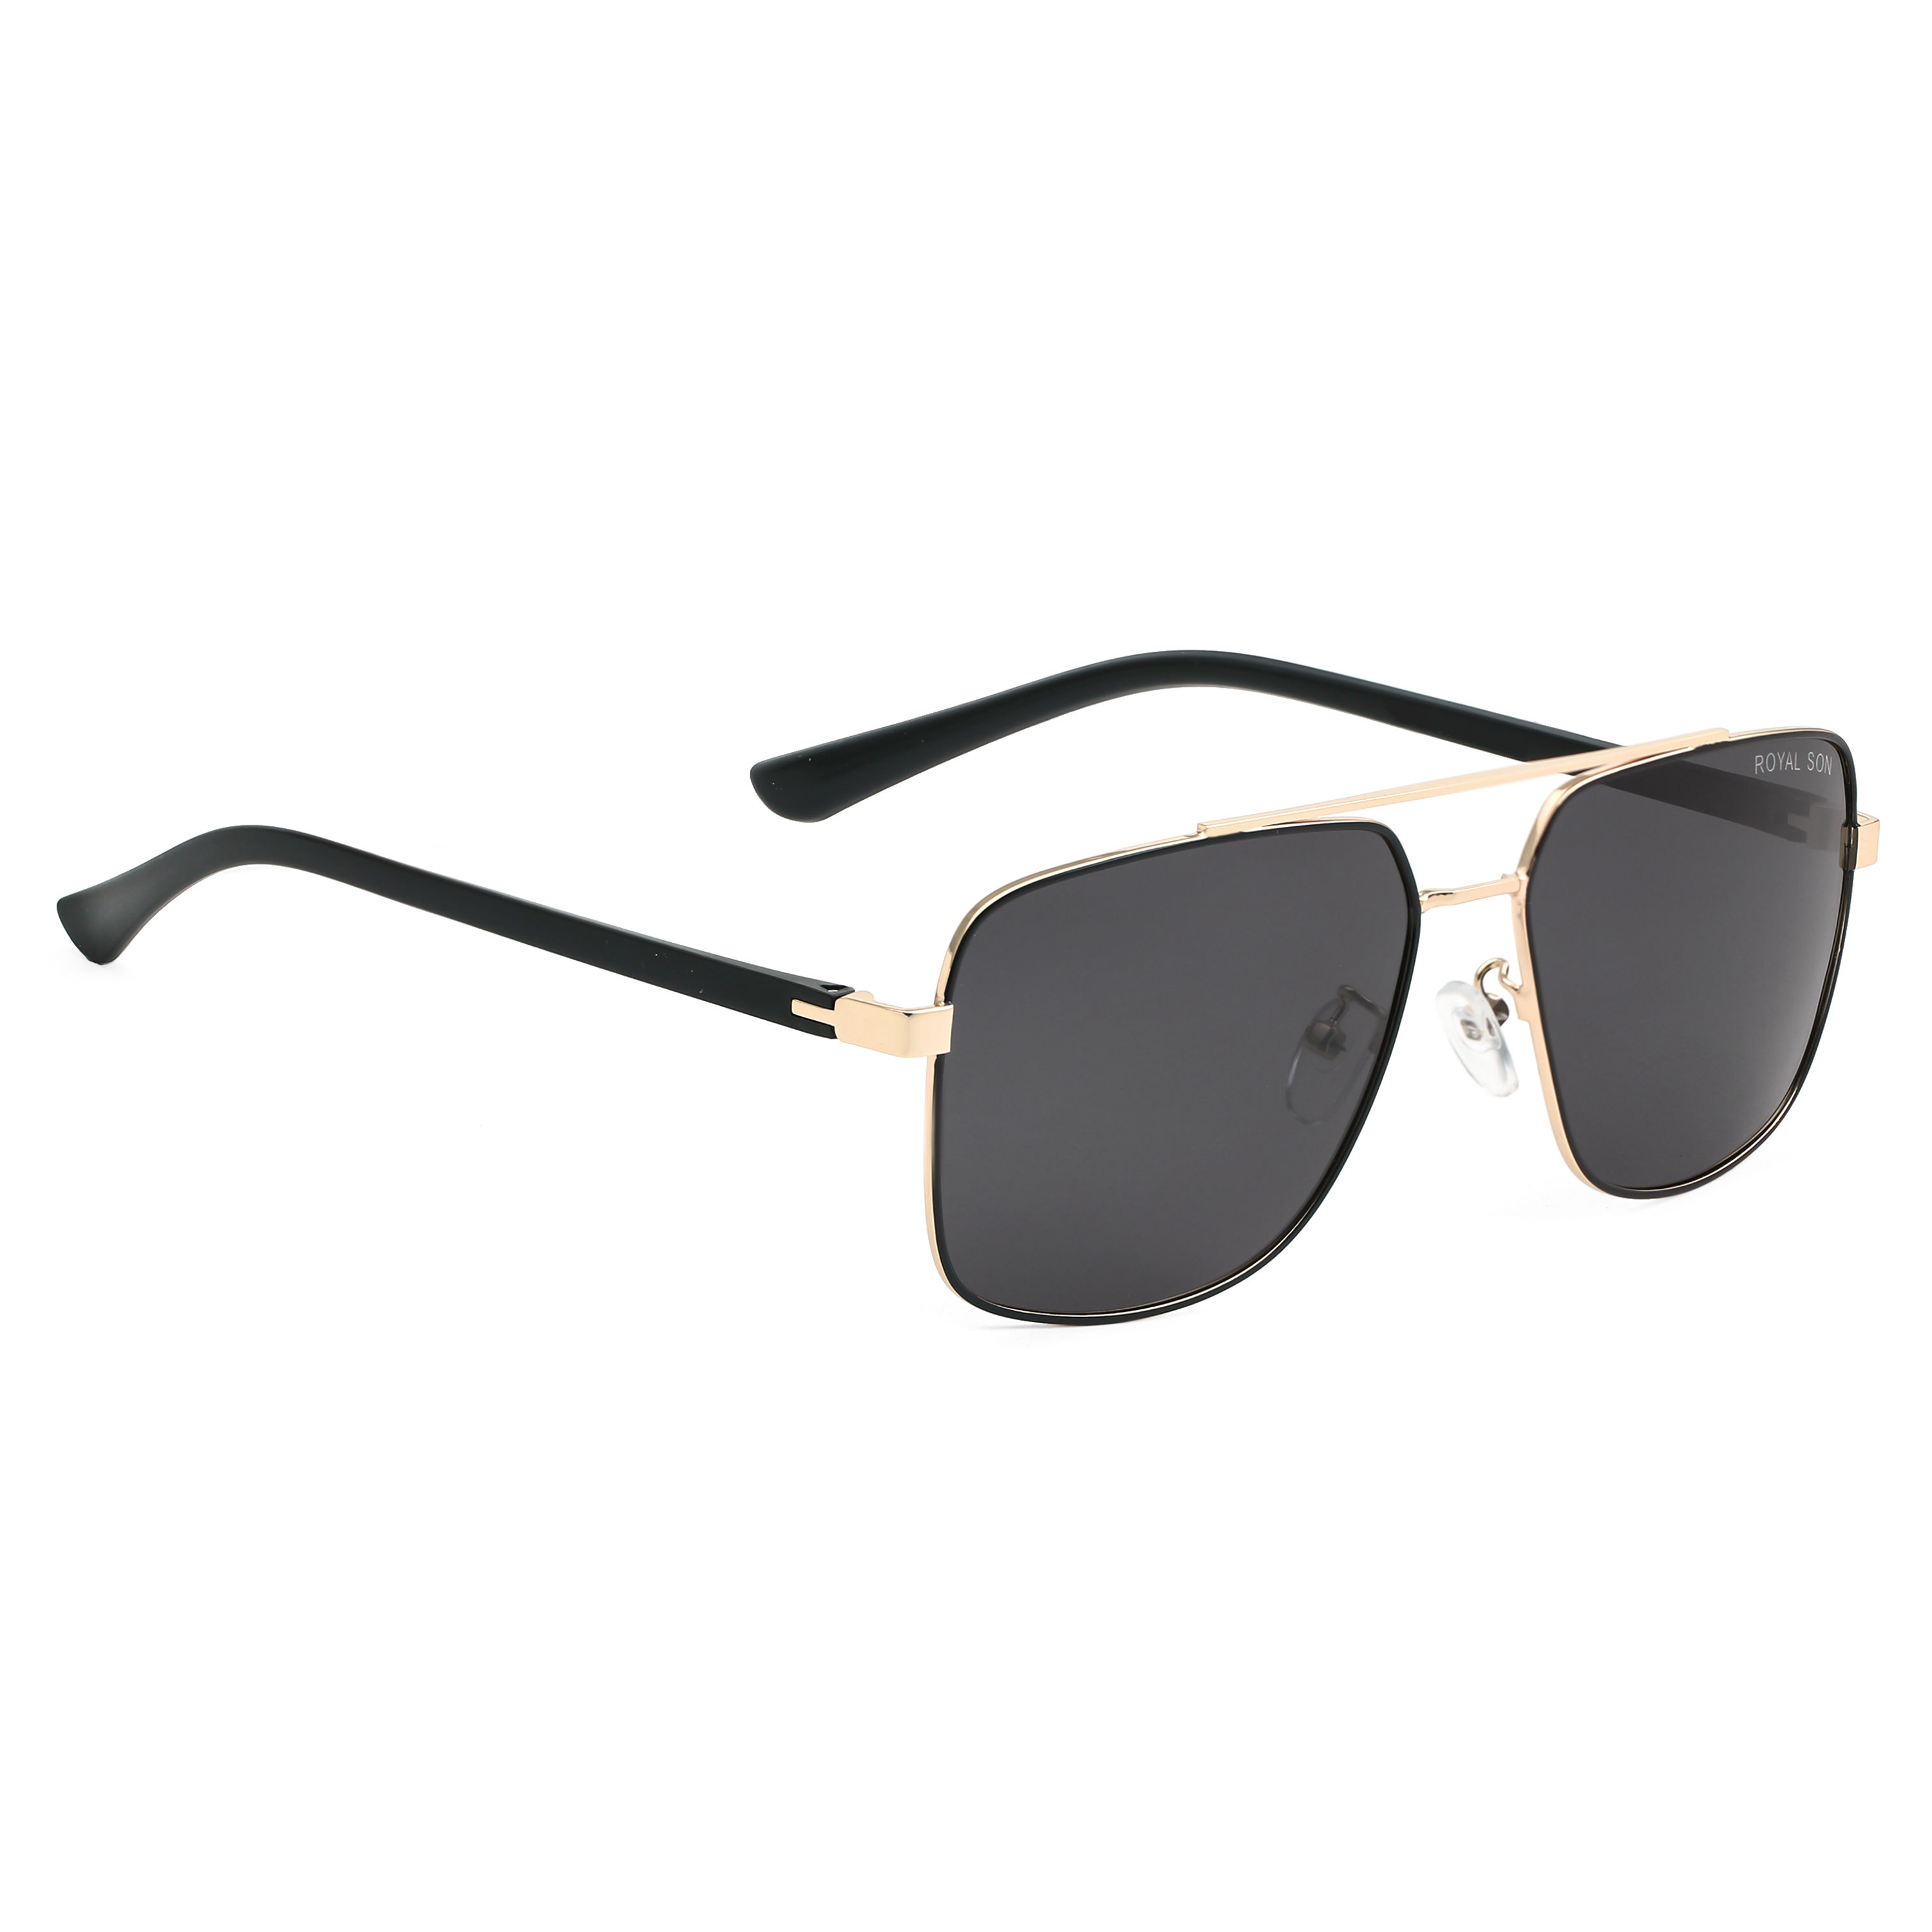 Orange Mercury And Gold Retro Square Sunglasses For Men And Women-Uniq –  UNIQUE & CLASSY